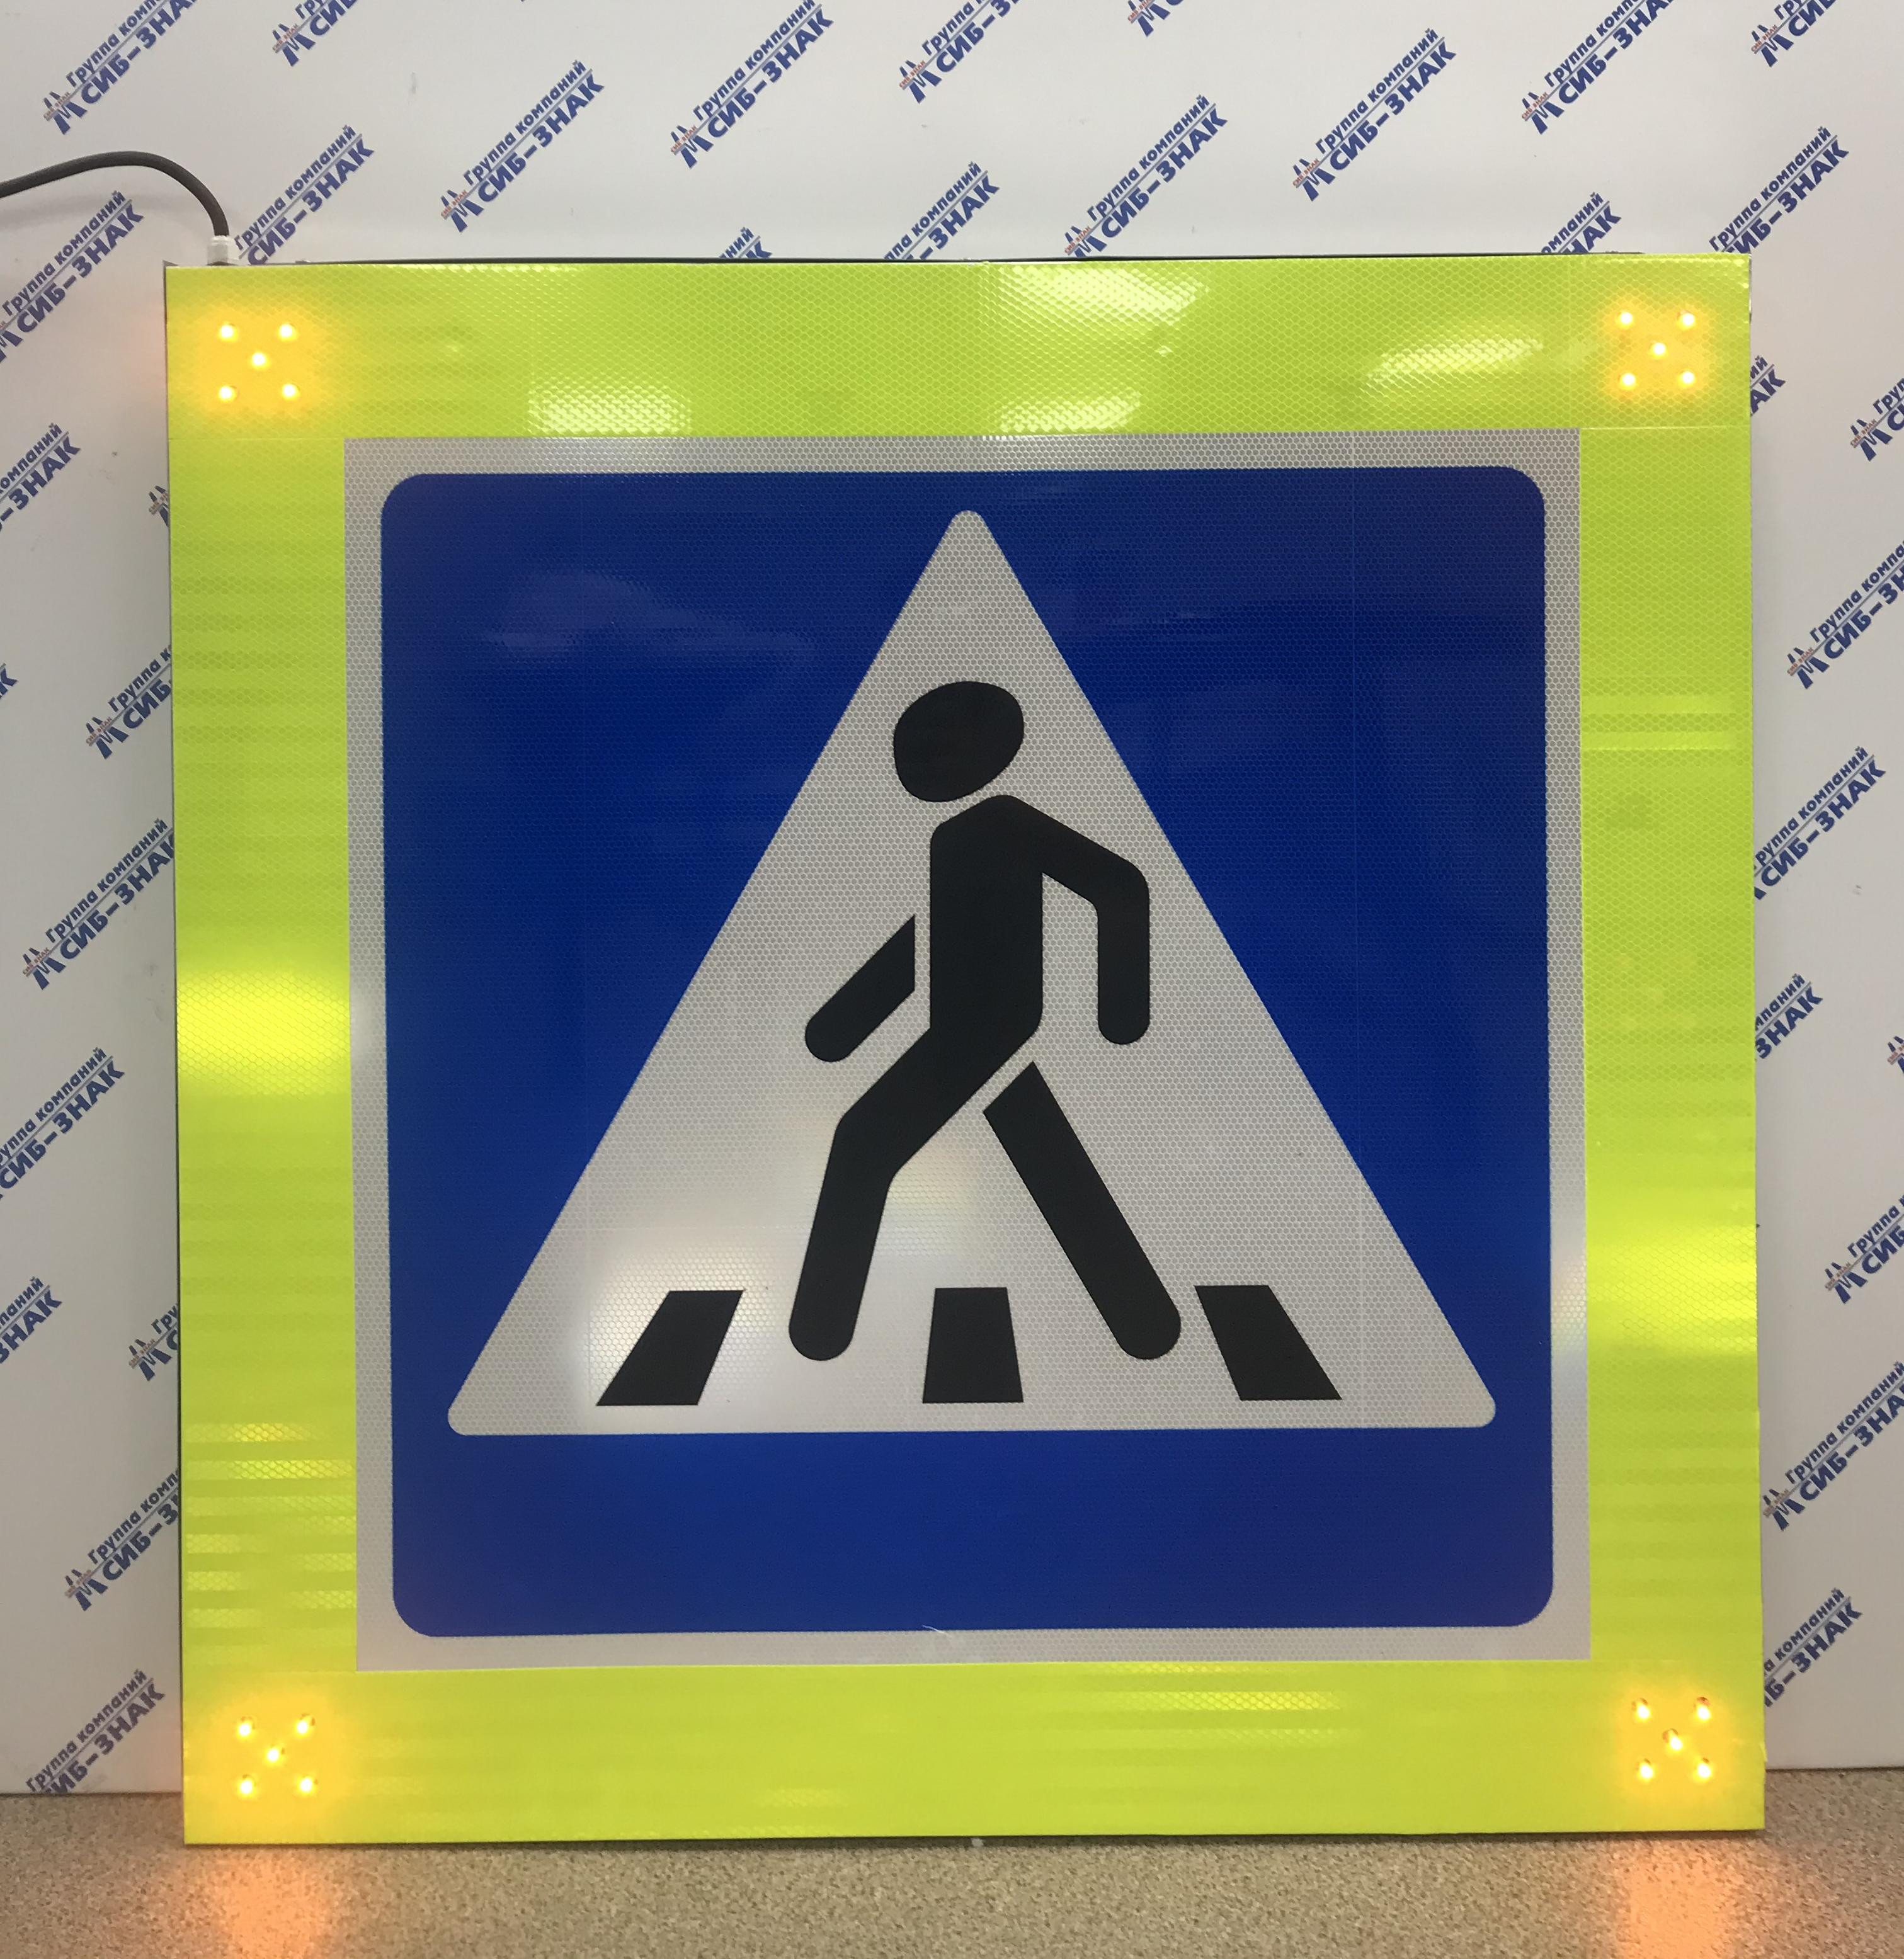 Знак "пешеходный переход" — картинки, действие знака надземного и подземного перехода, а также зебры для пешеходов